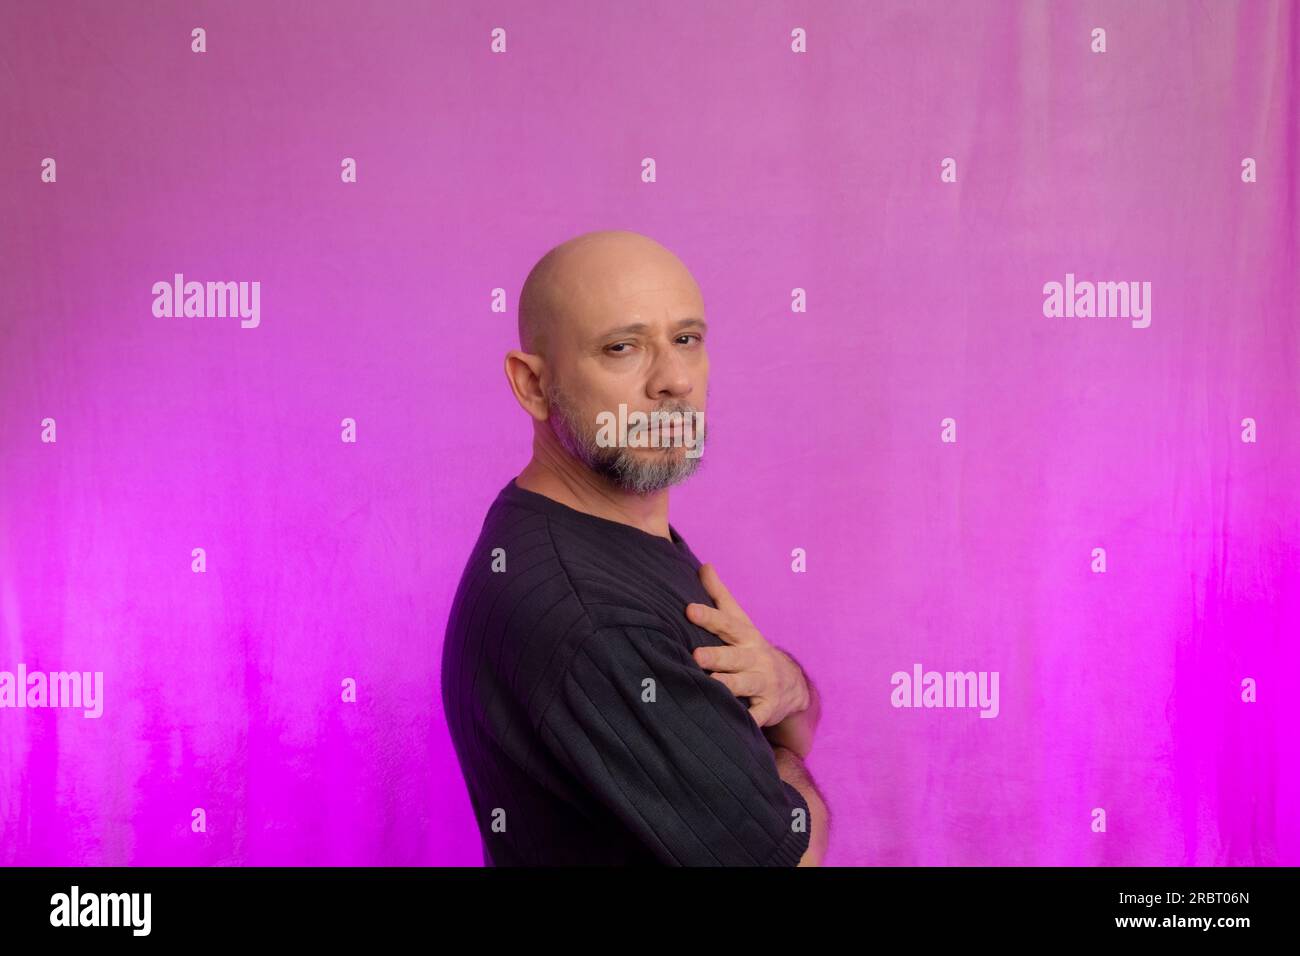 Ritratto di un serio uomo di 50 anni con barba e testa calva. Isolato su sfondo rosa. Foto Stock